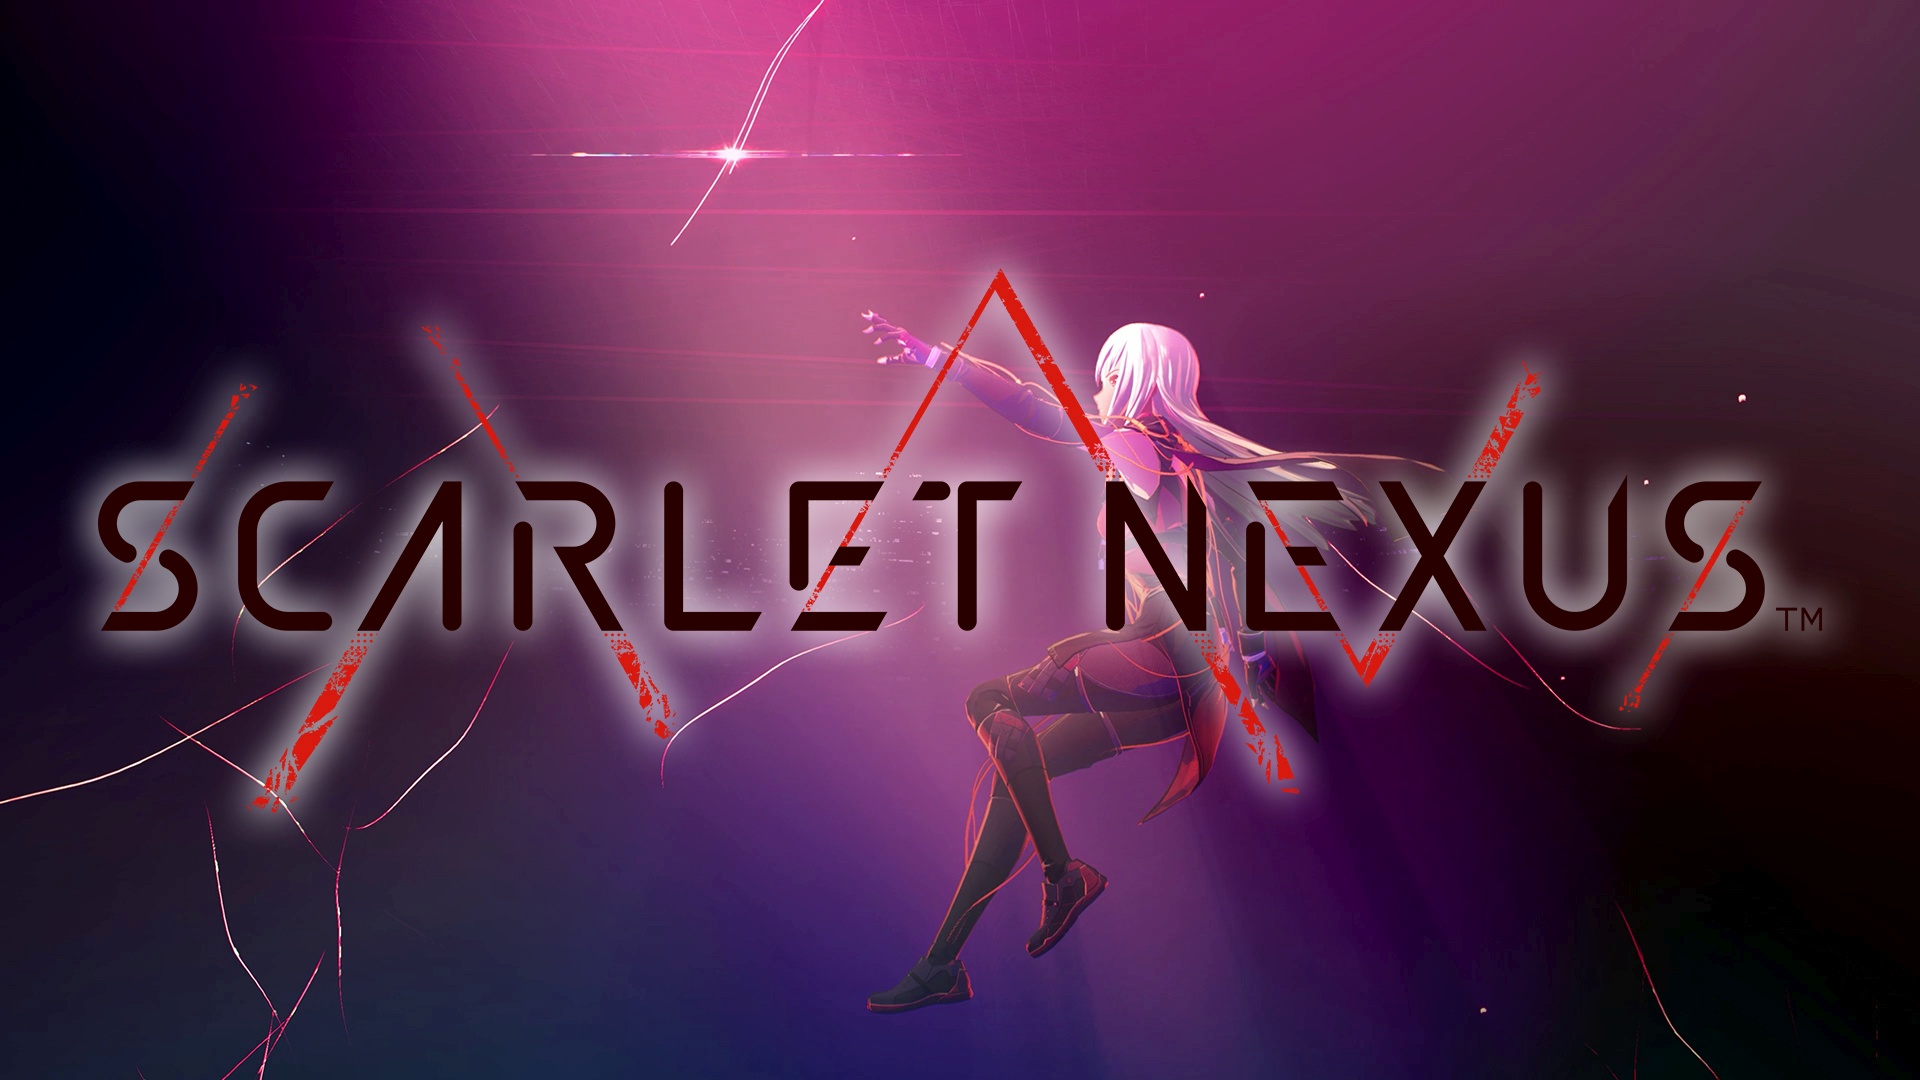 Scarlet Nexus computer background